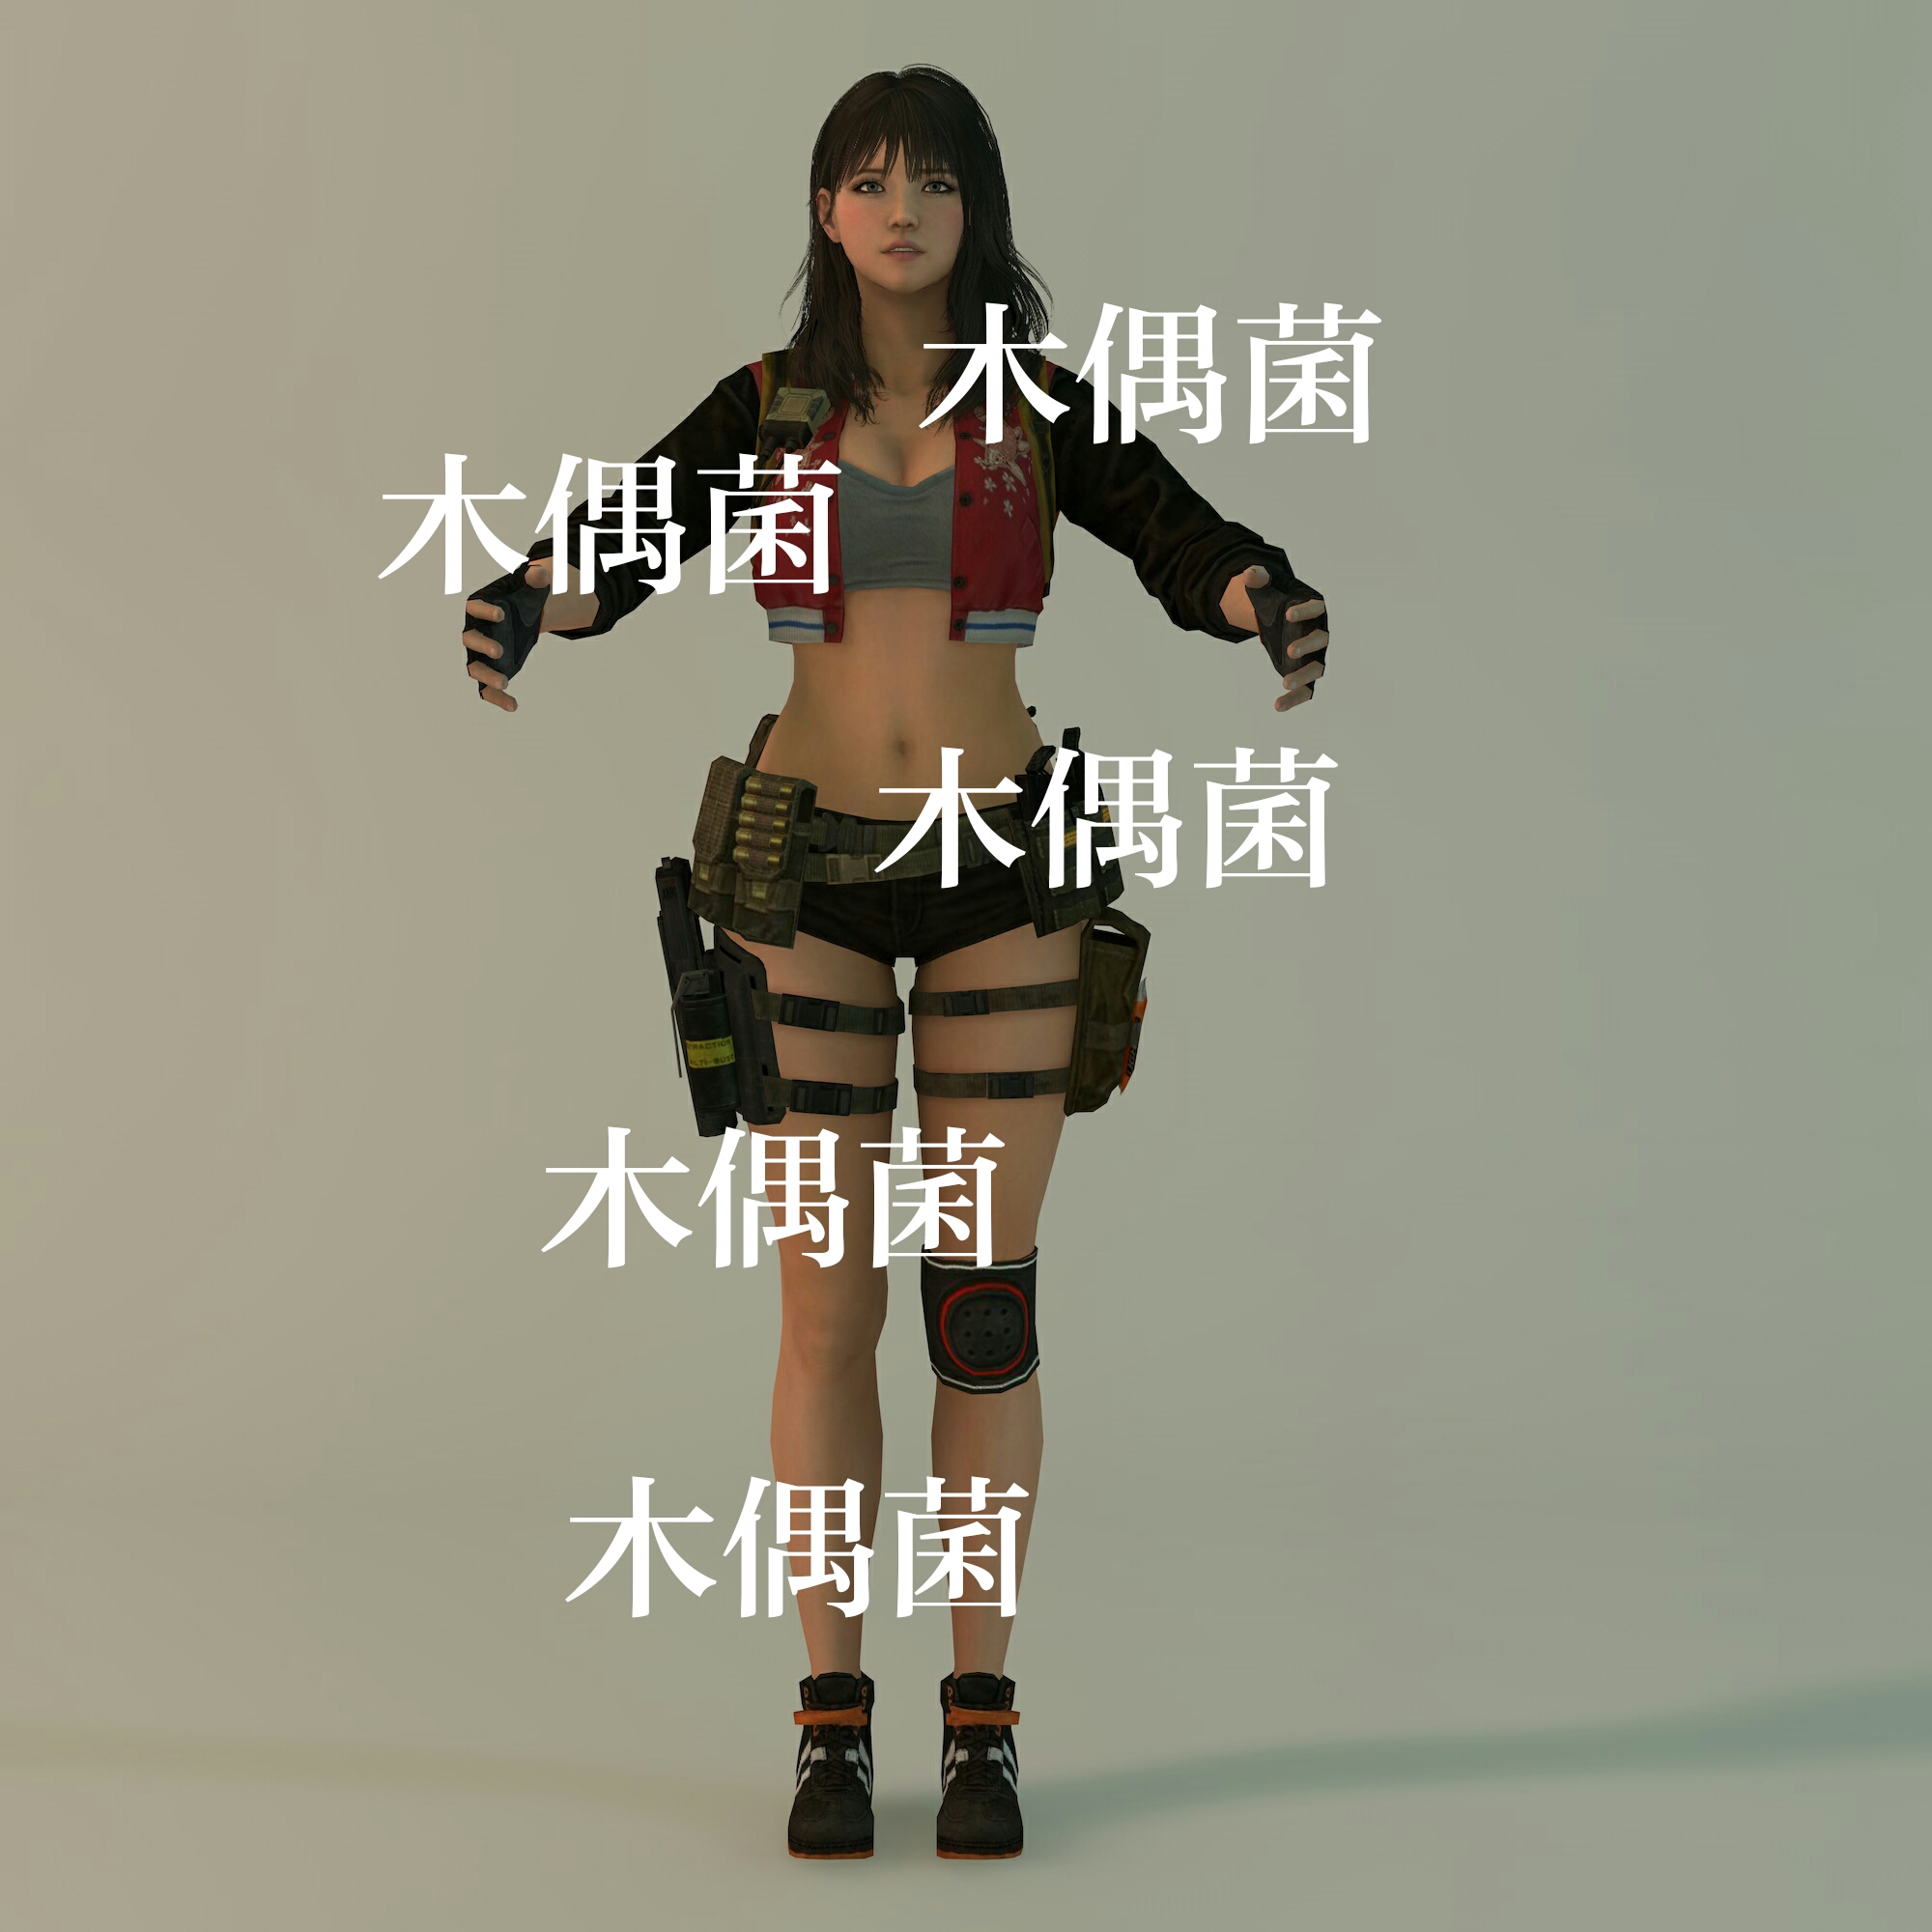 c4d fbx 格式游戏美女女人物战士士兵面部身体骨骼绑定 非实物C94